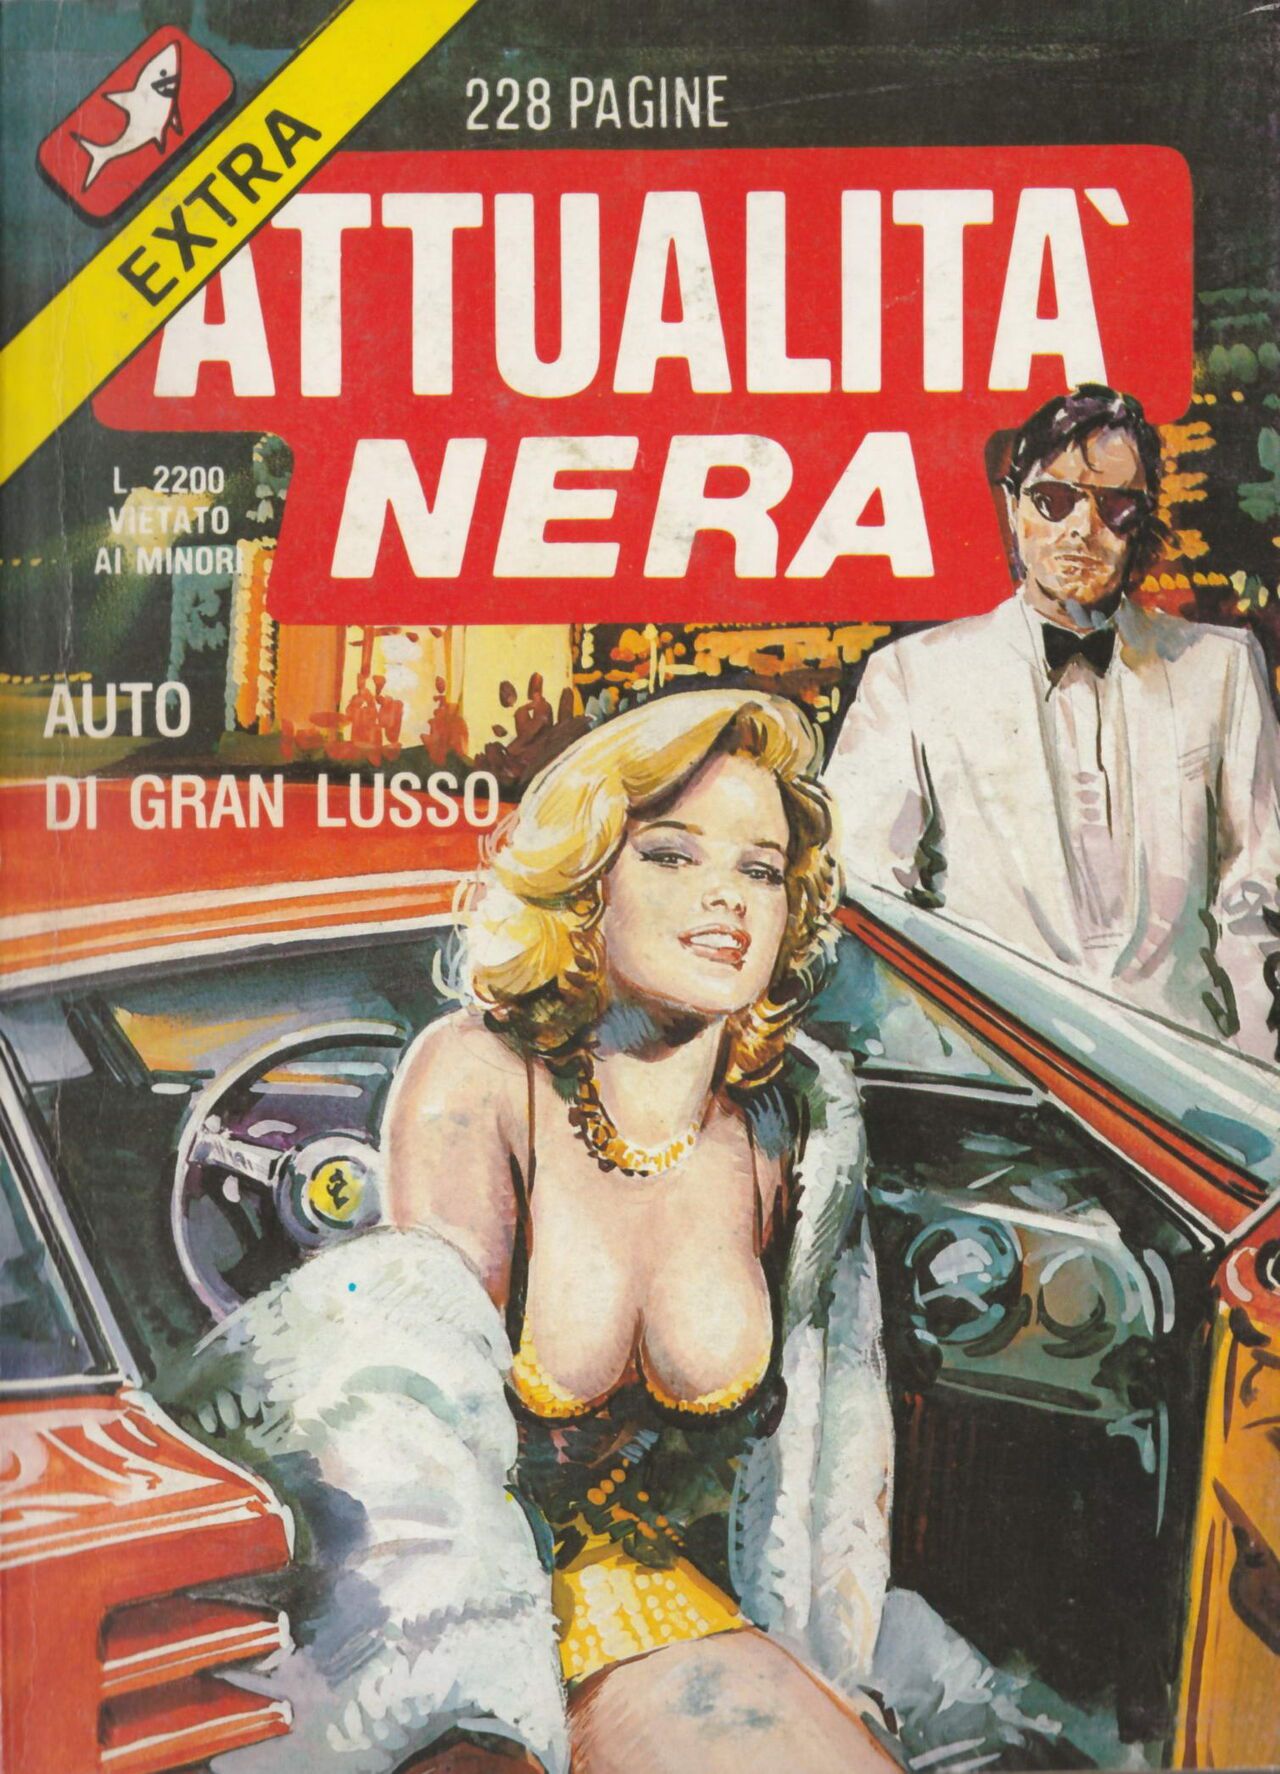 Attualita Nera Extra Anno IX, N°9 - Auto di gran lusso [Italian] 1